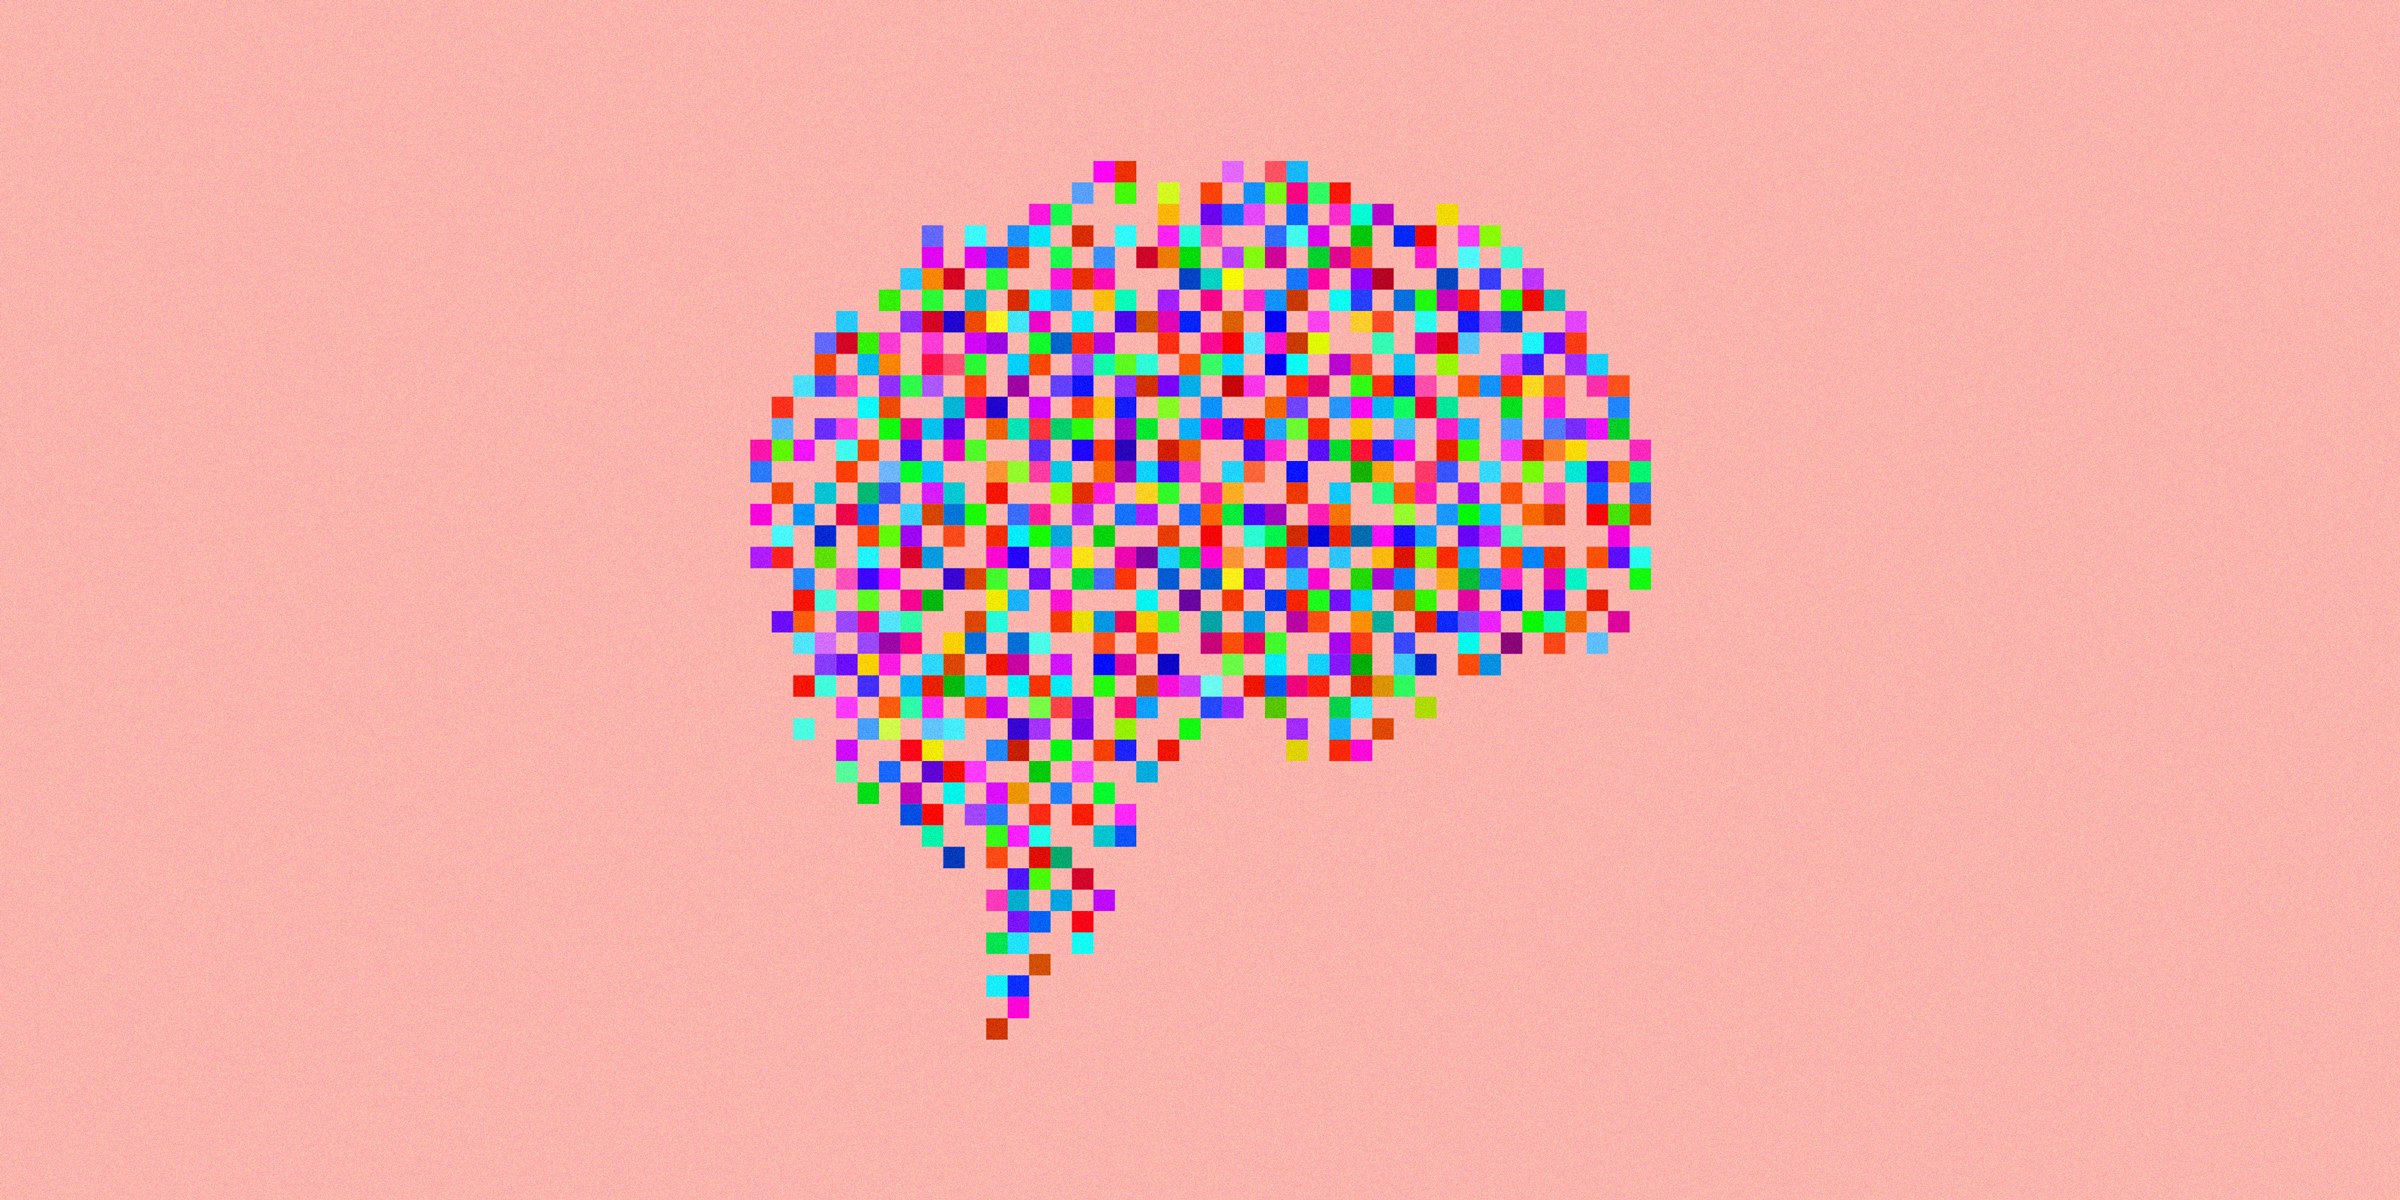 Nutzt unser Gehirn eine Tiefe Ausbildung für das Verständnis der Welt?